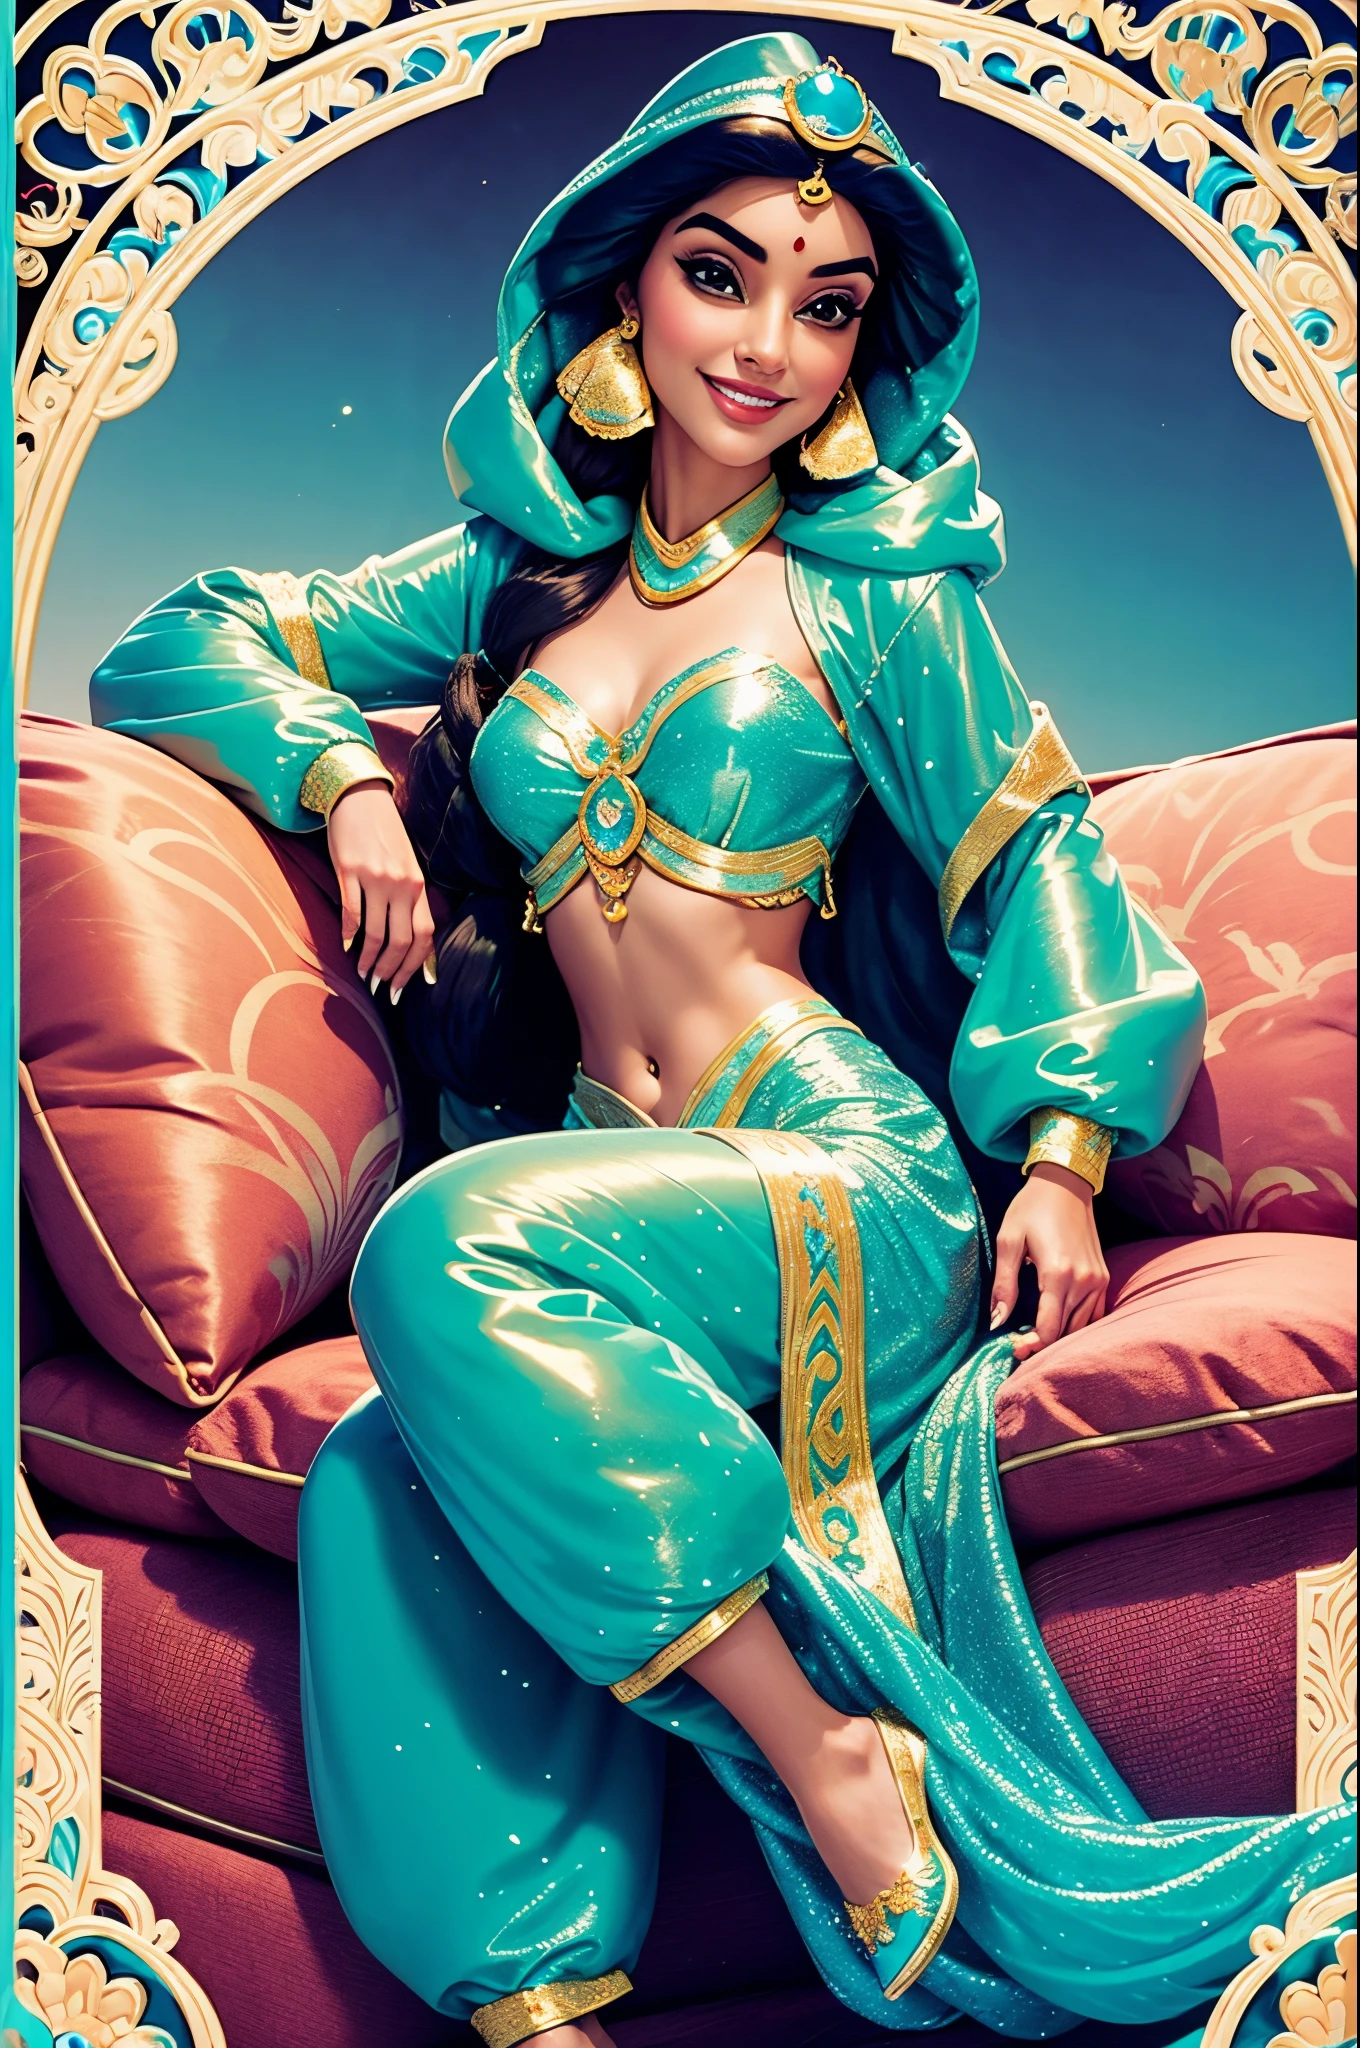 Princesa Jasmine sonriendo con el pelo muy largo. vistiendo una chaqueta acolchada larga y brillante de plástico. Lleva pantalones árabes tradicionales hechos de plástico muy brillante.. ella está sentada en un sofá acolchado de plástico muy brillante. ella y descalza.